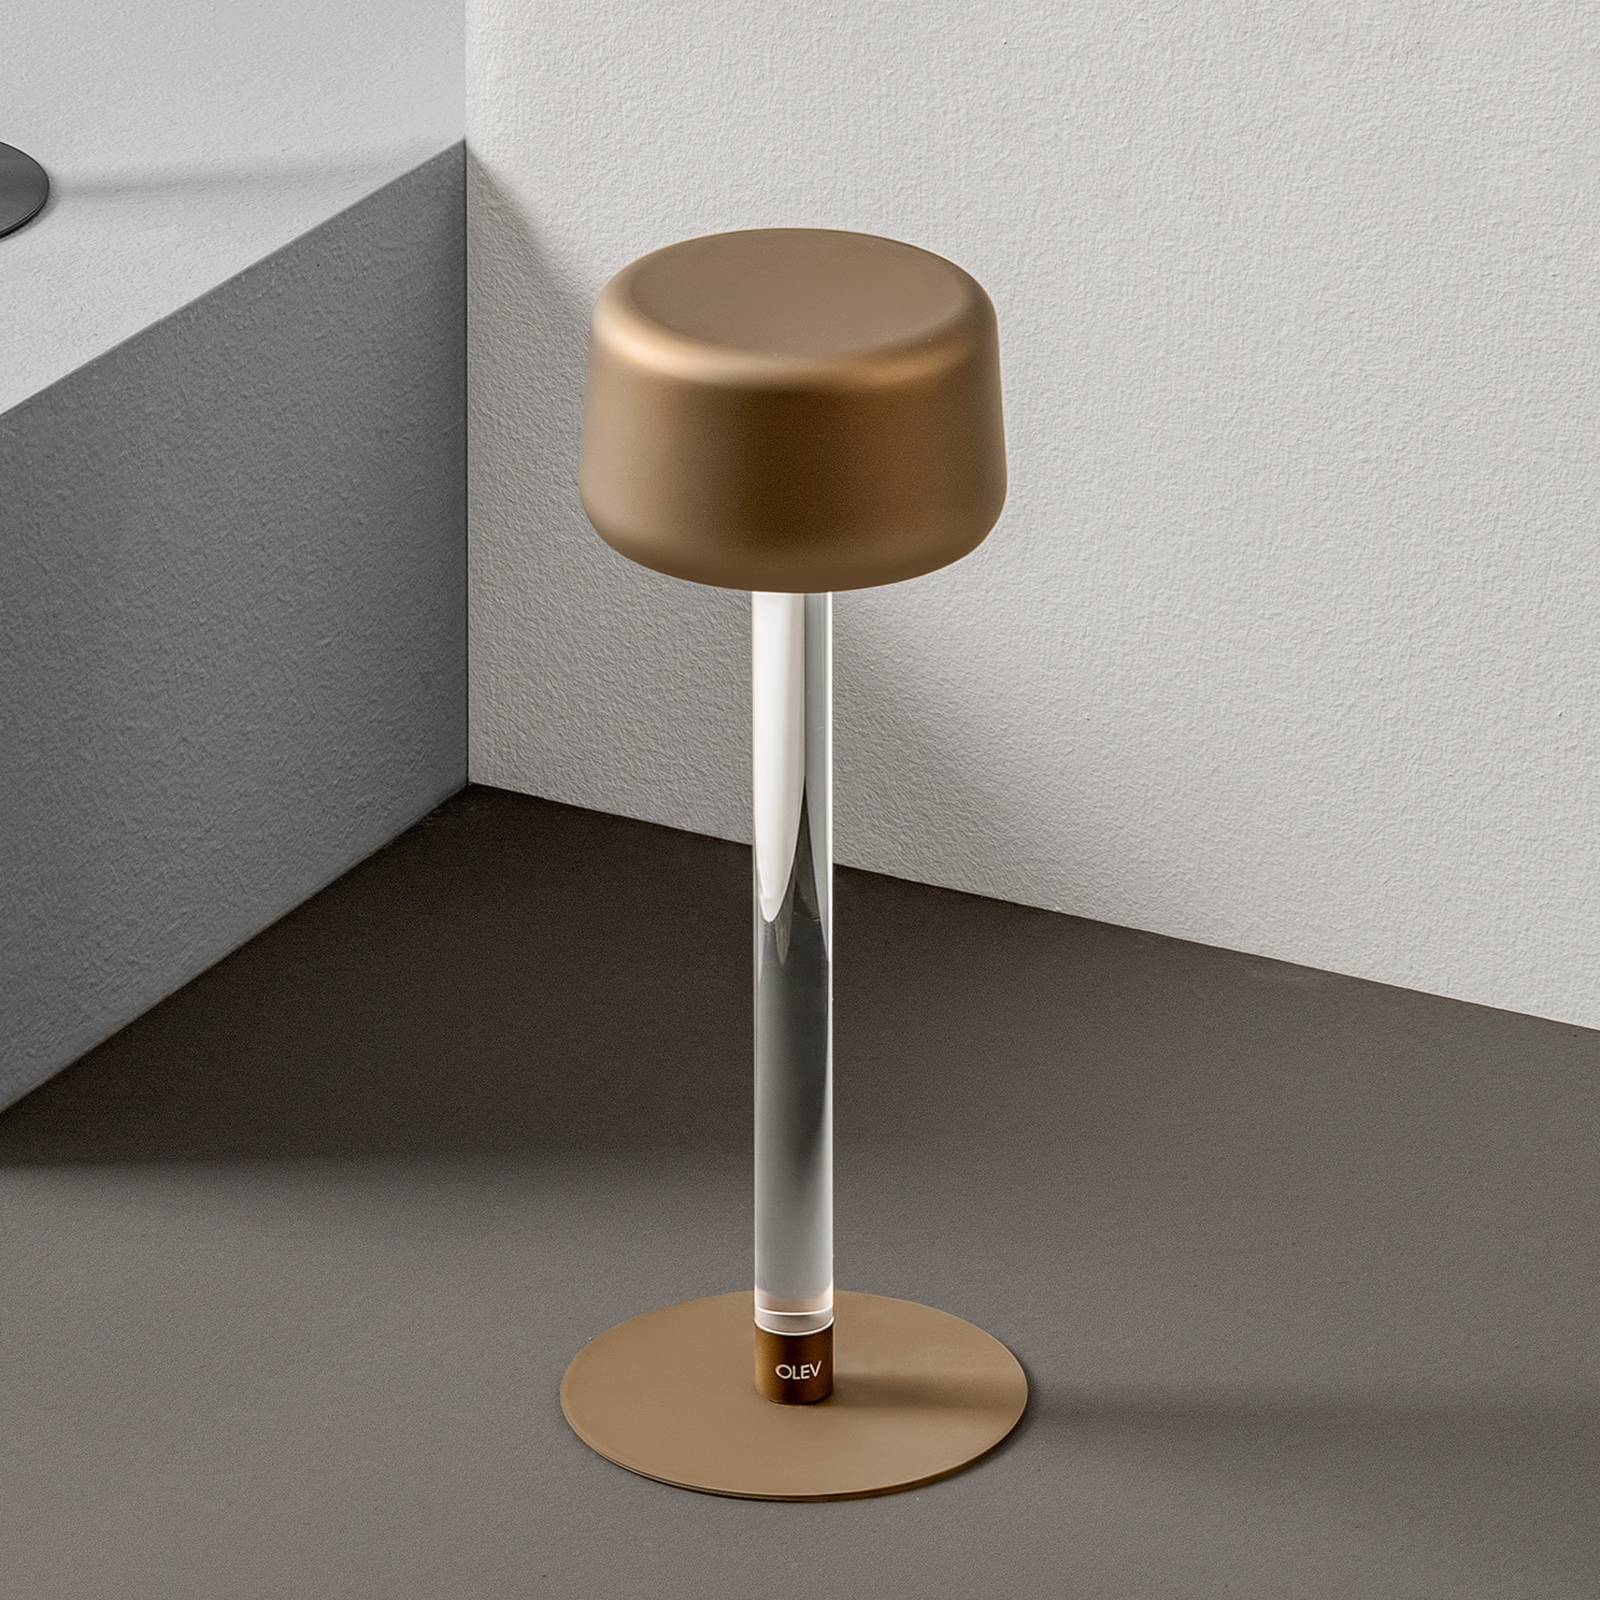 OleV Designová stolní lampa OLEV Tee s dobíjecí baterií, zlatá